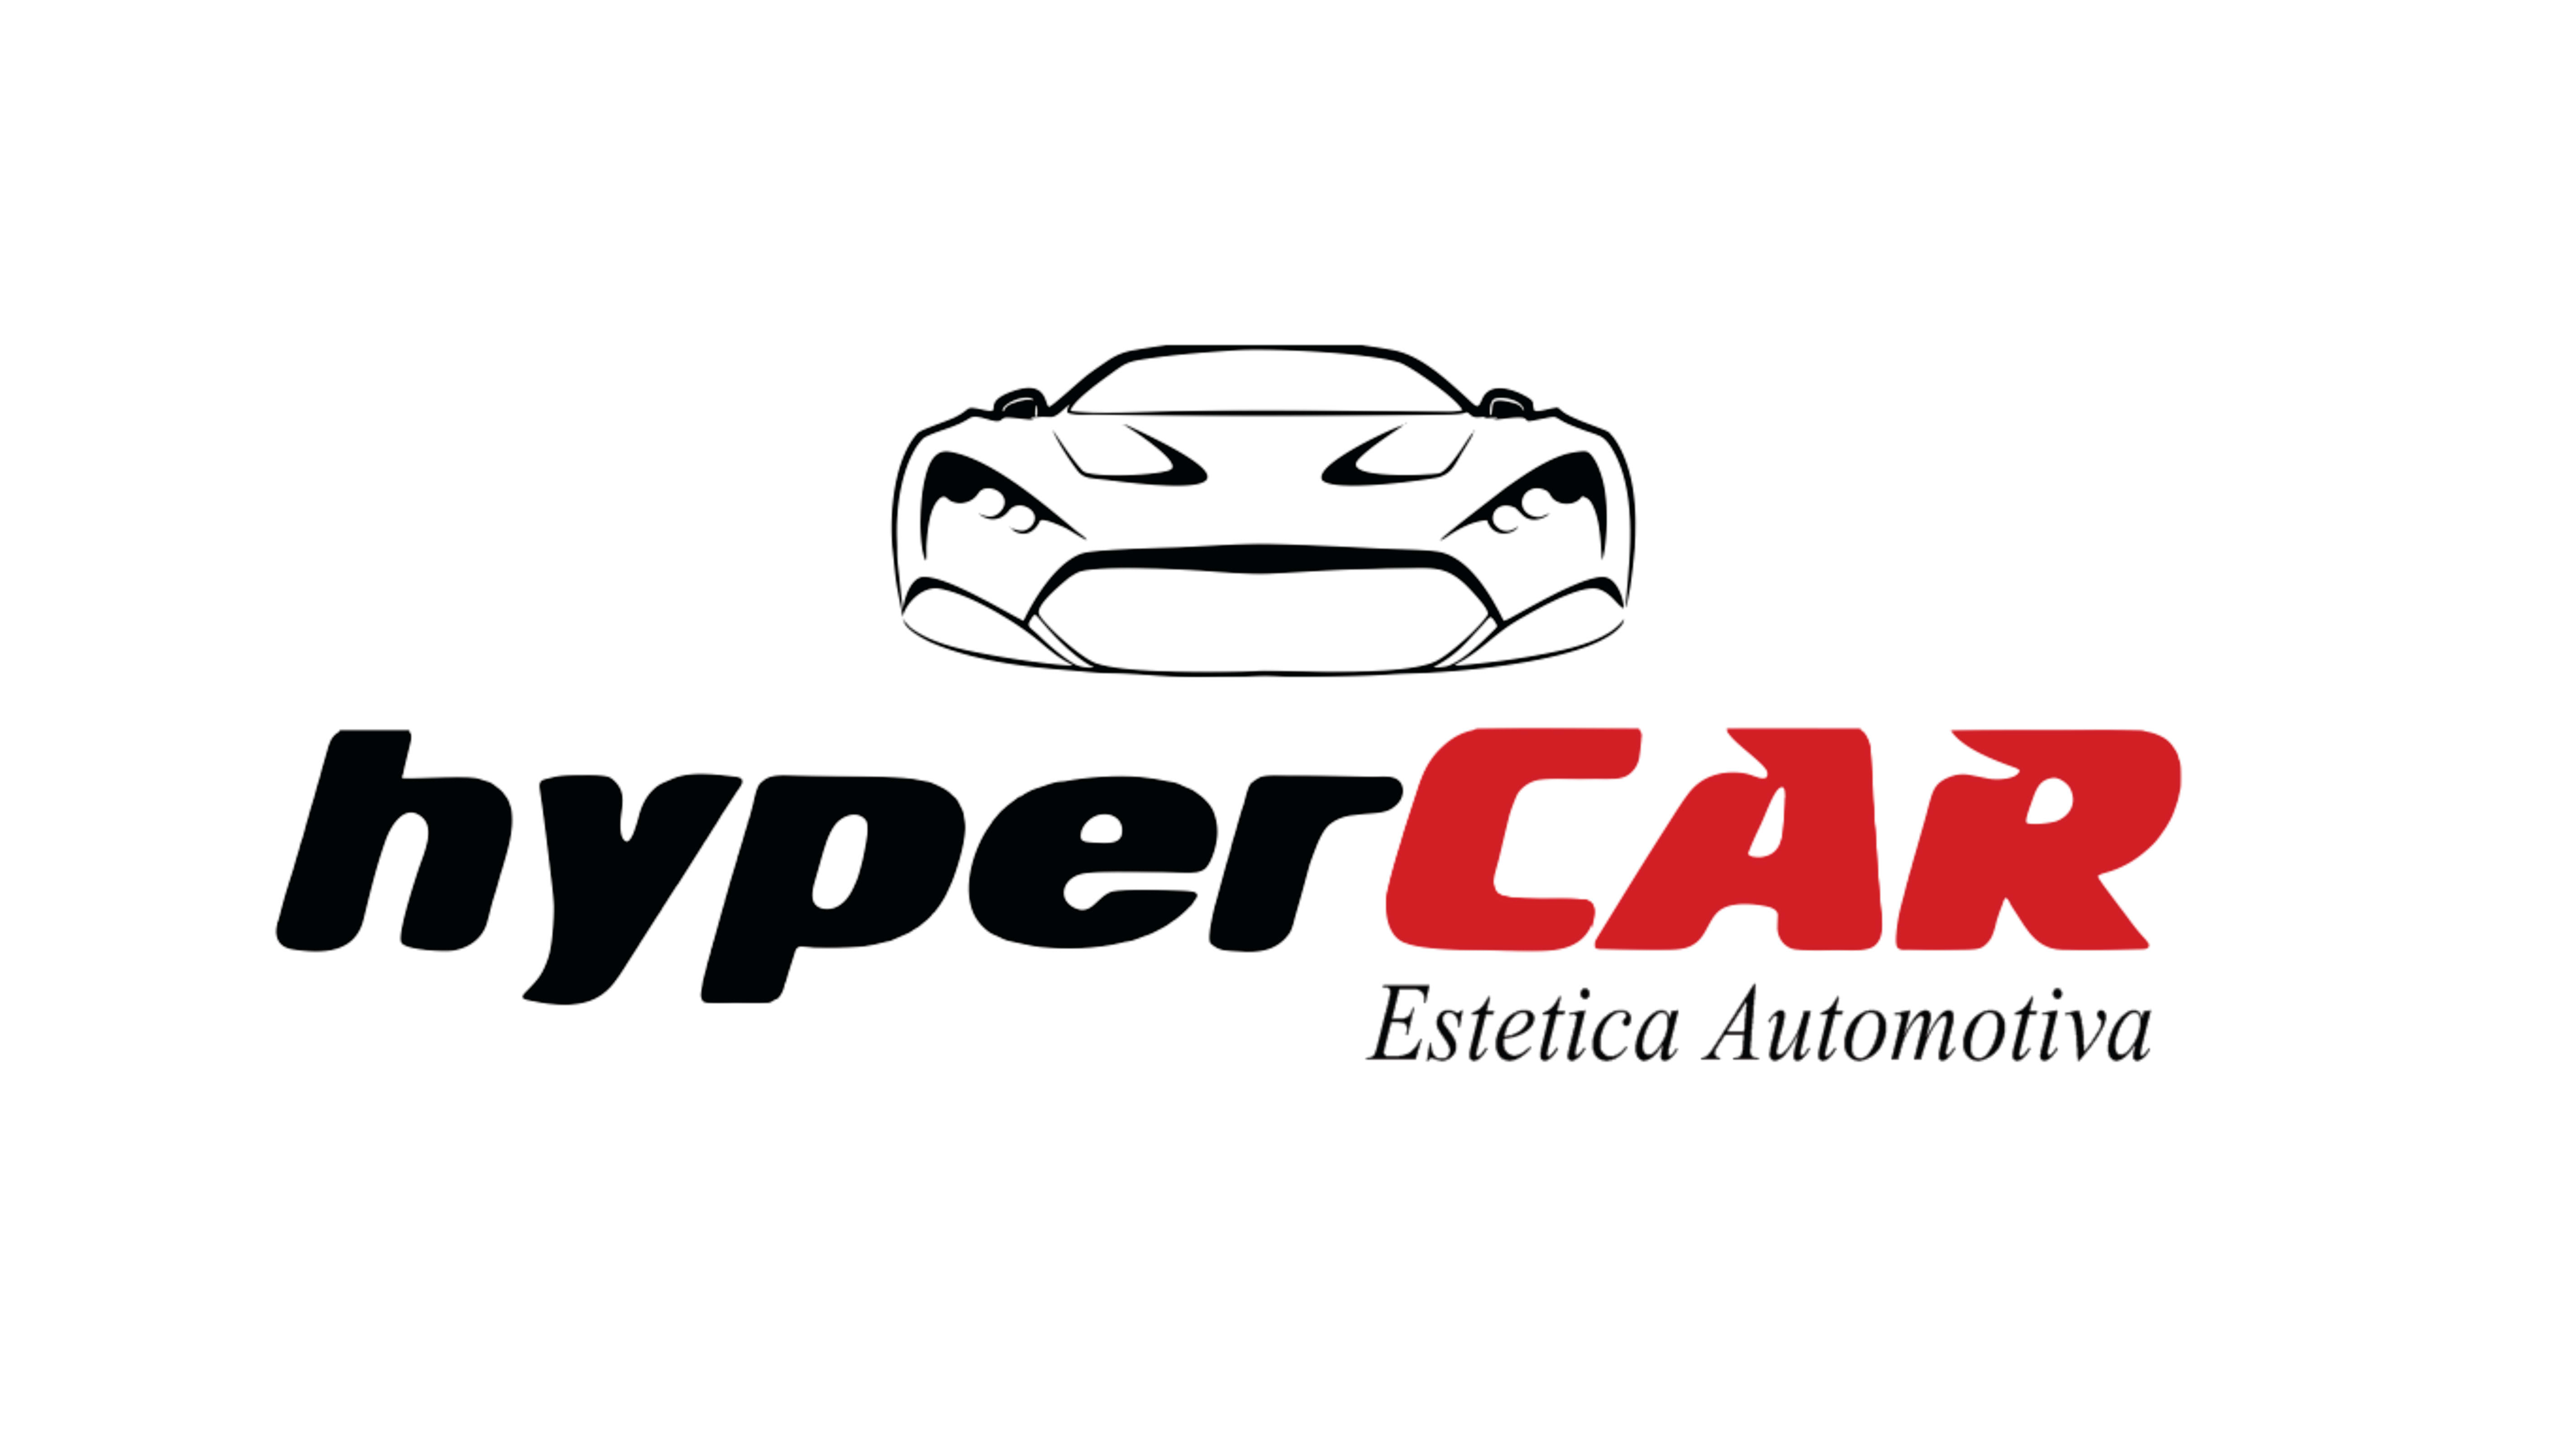 Hypercar Estética Automotiva